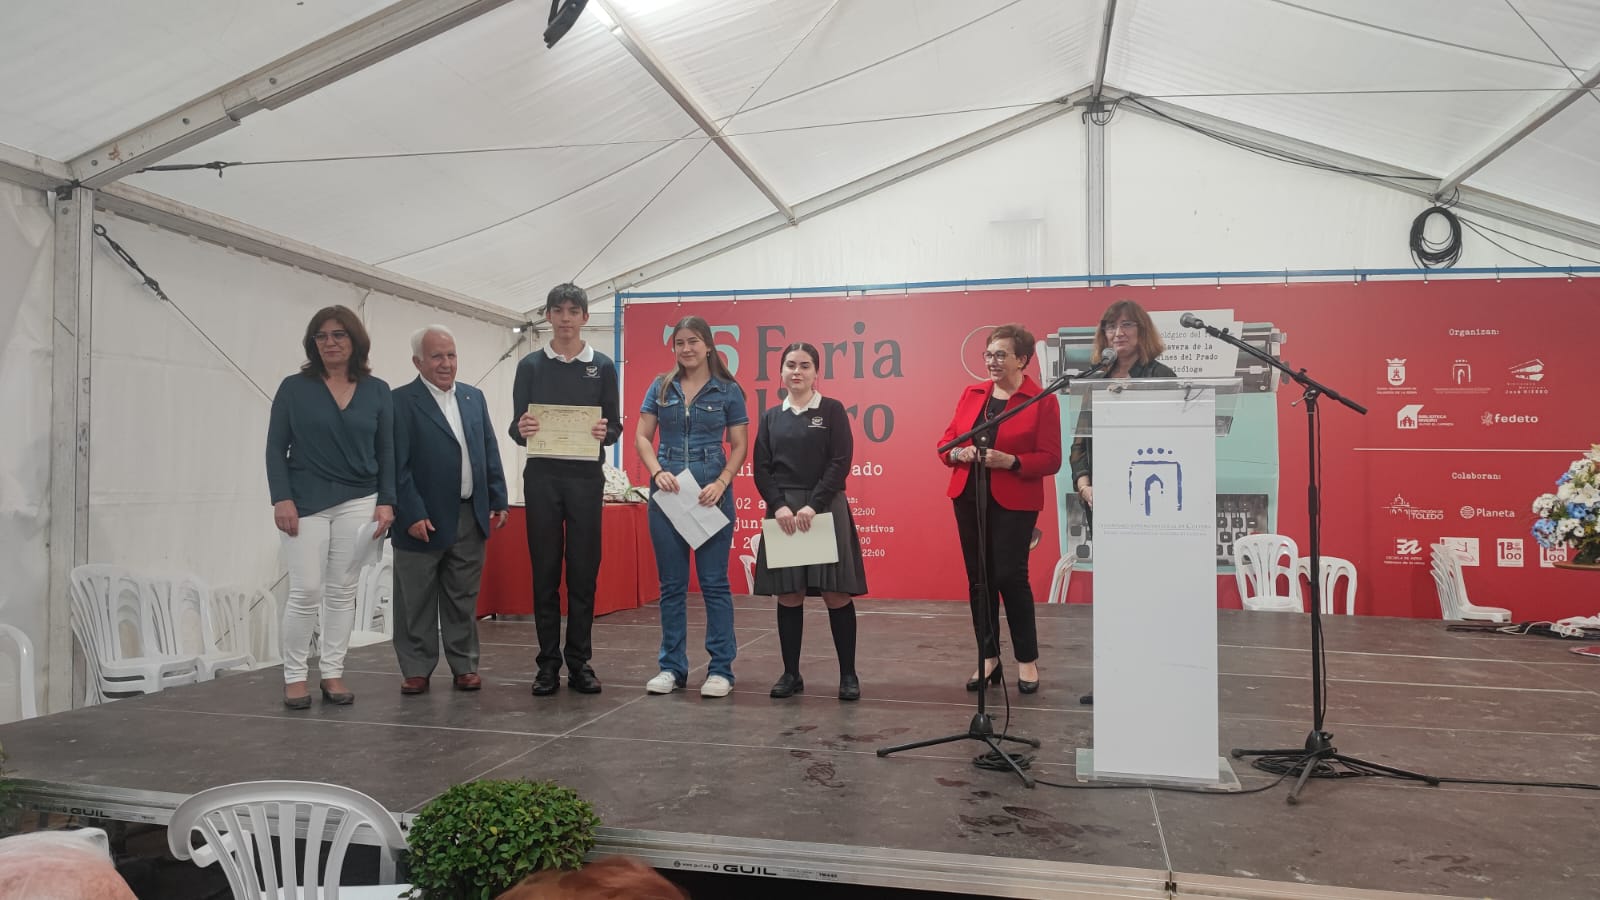 foto premios relato breve de la 35ª Feria del Libro de Talavera